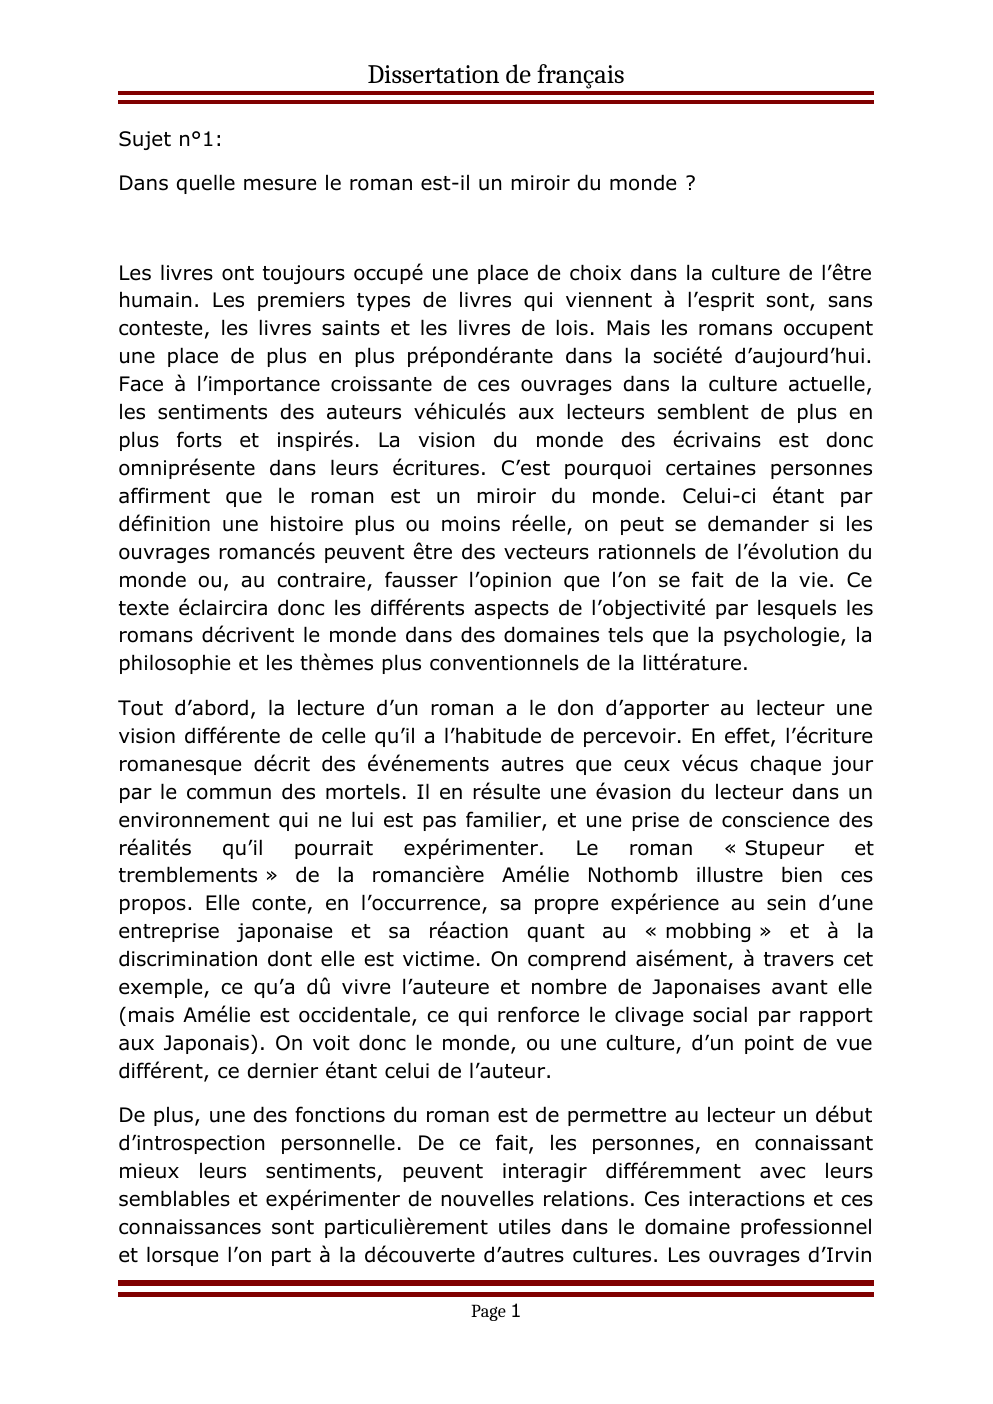 Prévisualisation du document dissertation de français Sujet n°1: Dans quelle mesure le roman est-il un miroir du monde ?